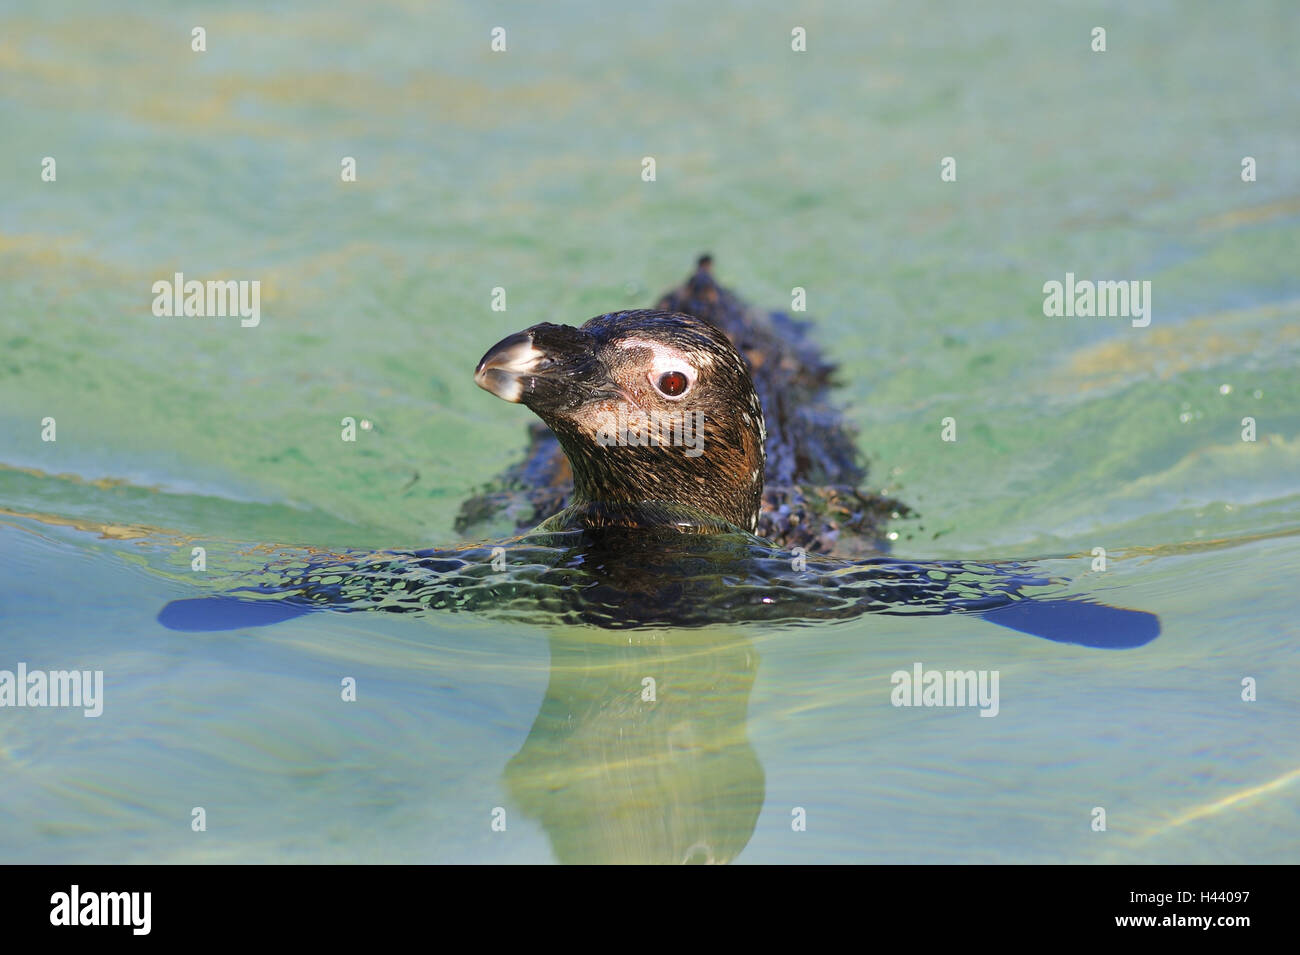 Glass penguin, Spheniscus demersus, swim, portrait, Stock Photo